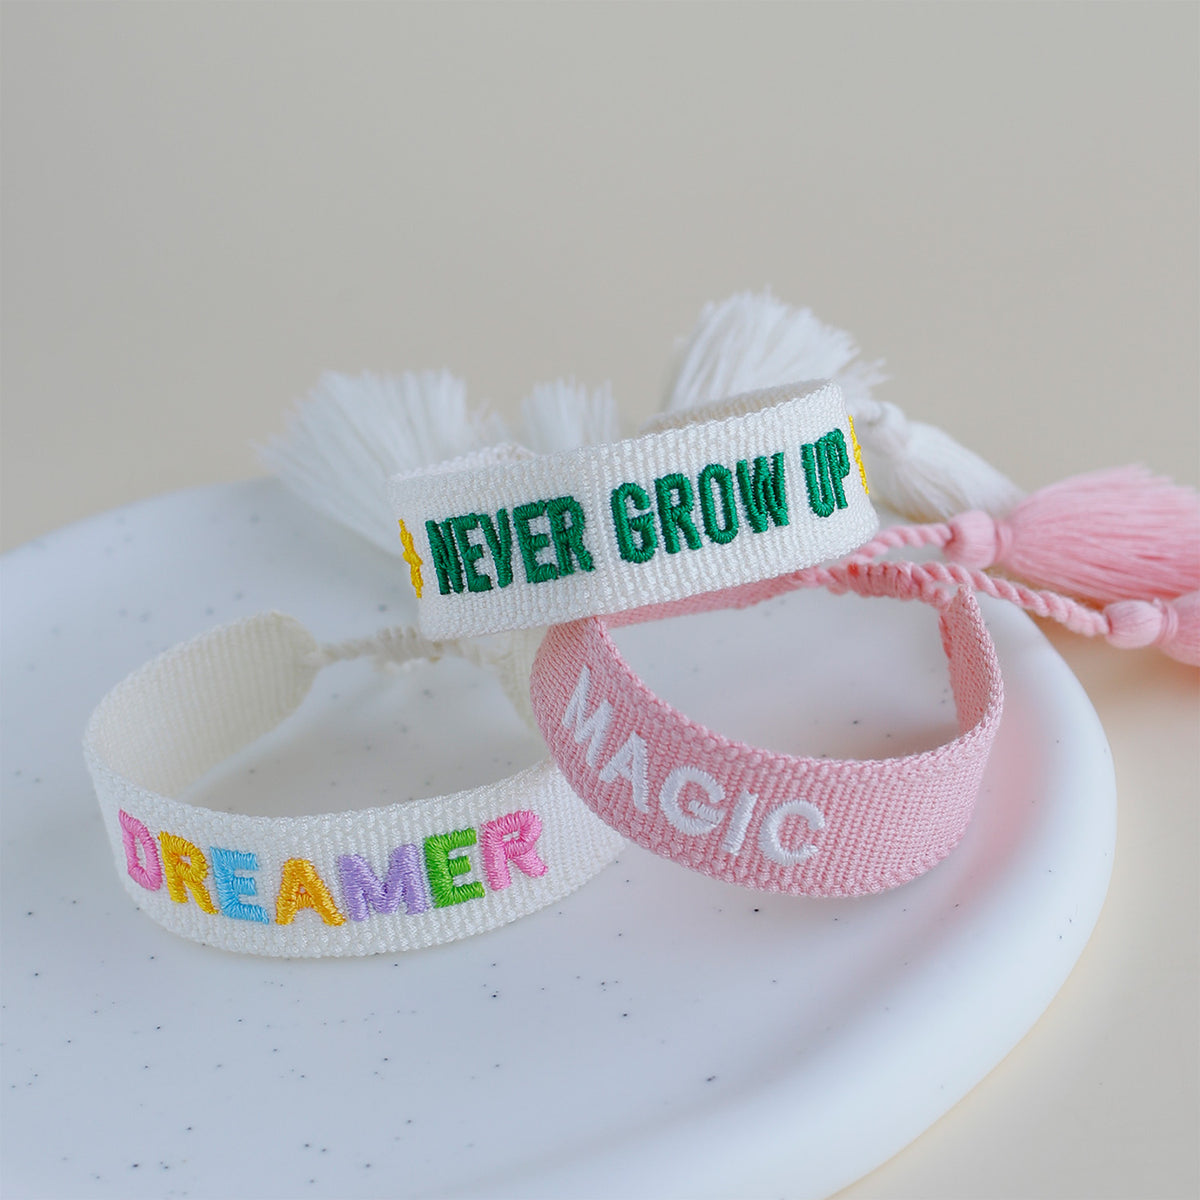 Woven Tassel Bracelet - Never Grow Up